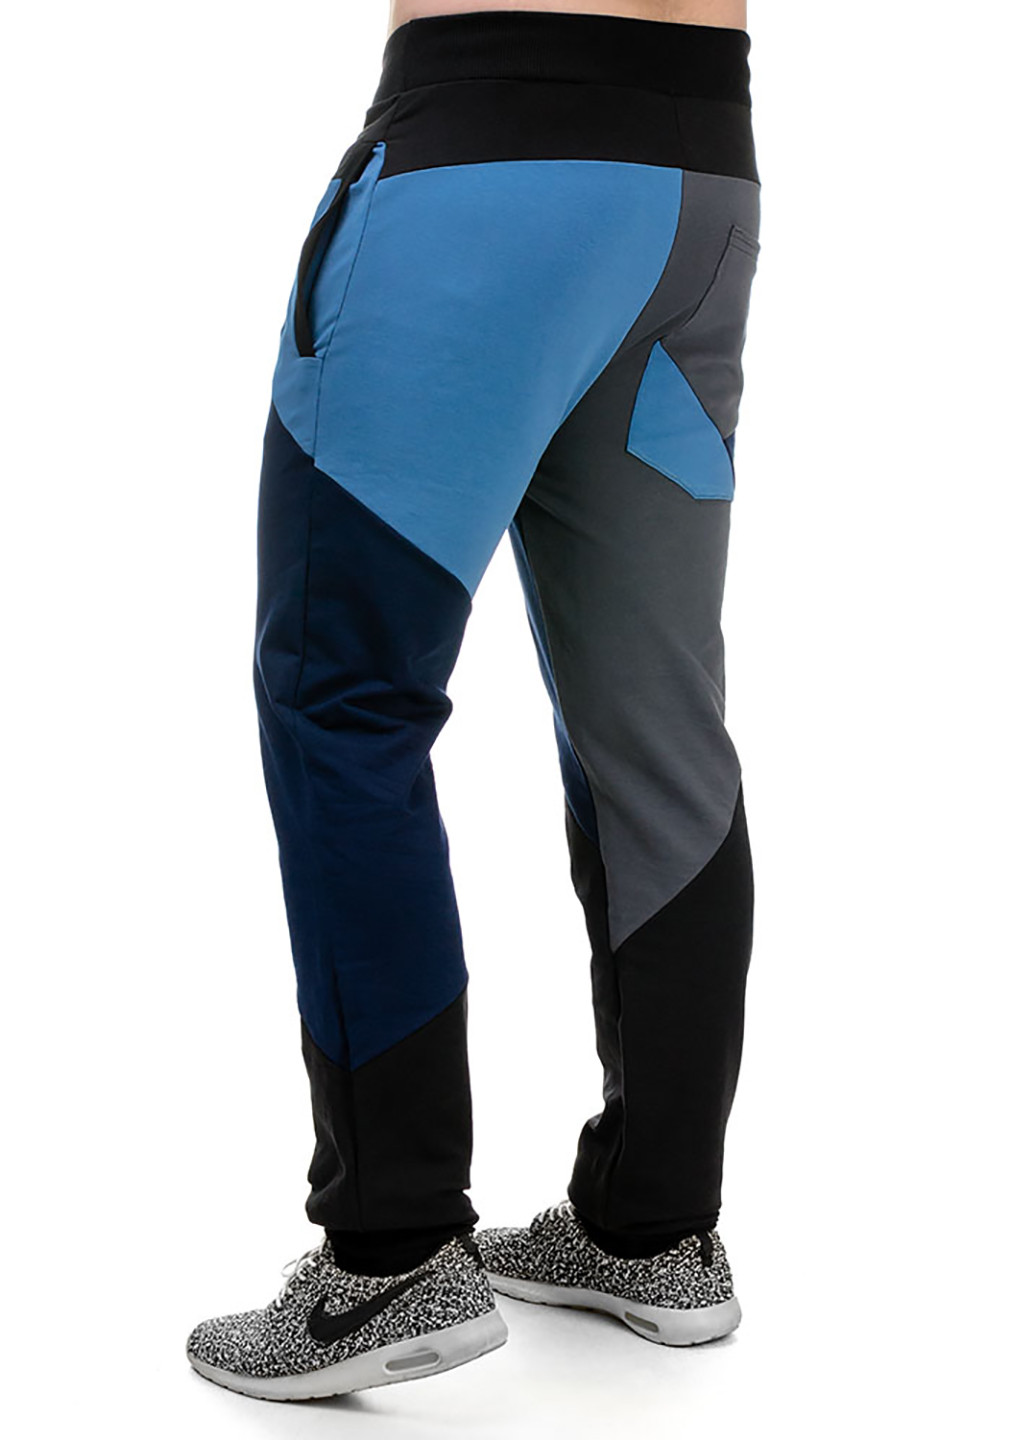 Синие спортивные демисезонные со средней талией брюки Artystuff